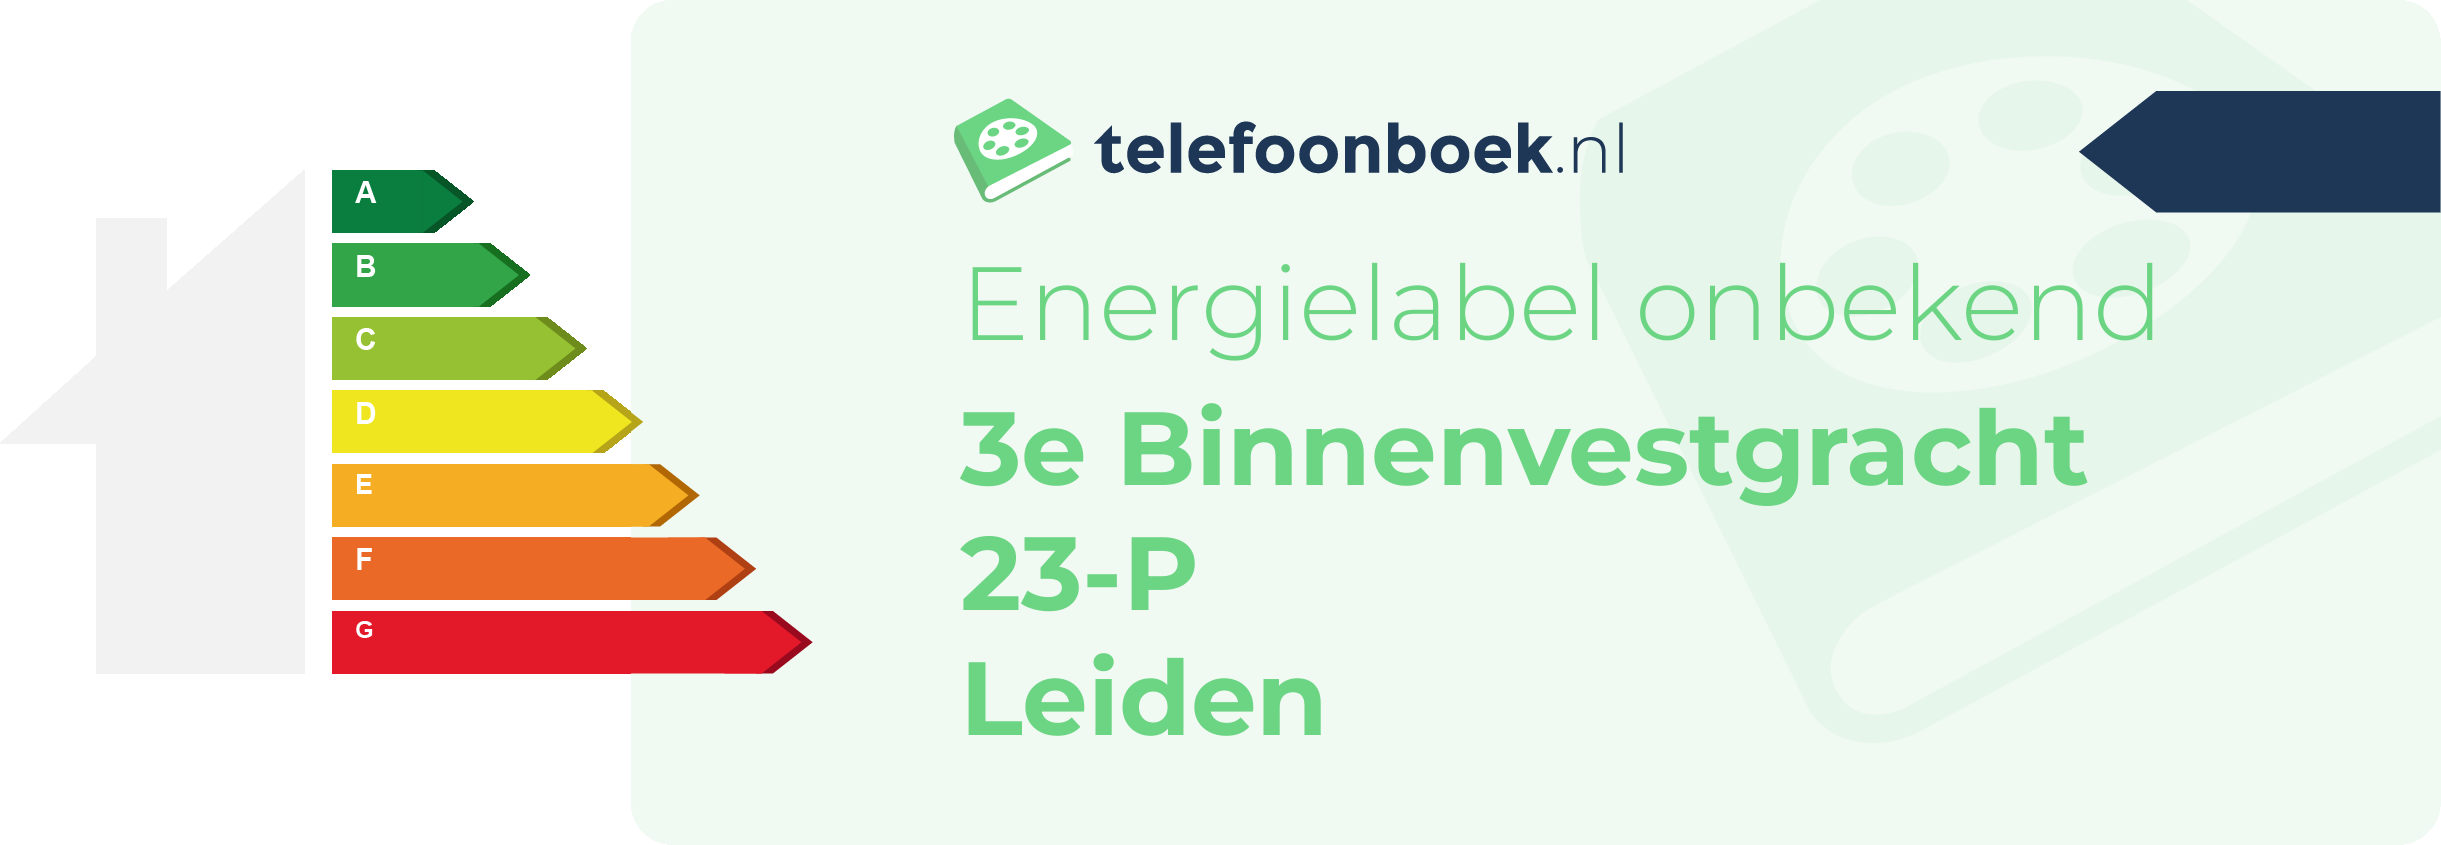 Energielabel 3e Binnenvestgracht 23-P Leiden